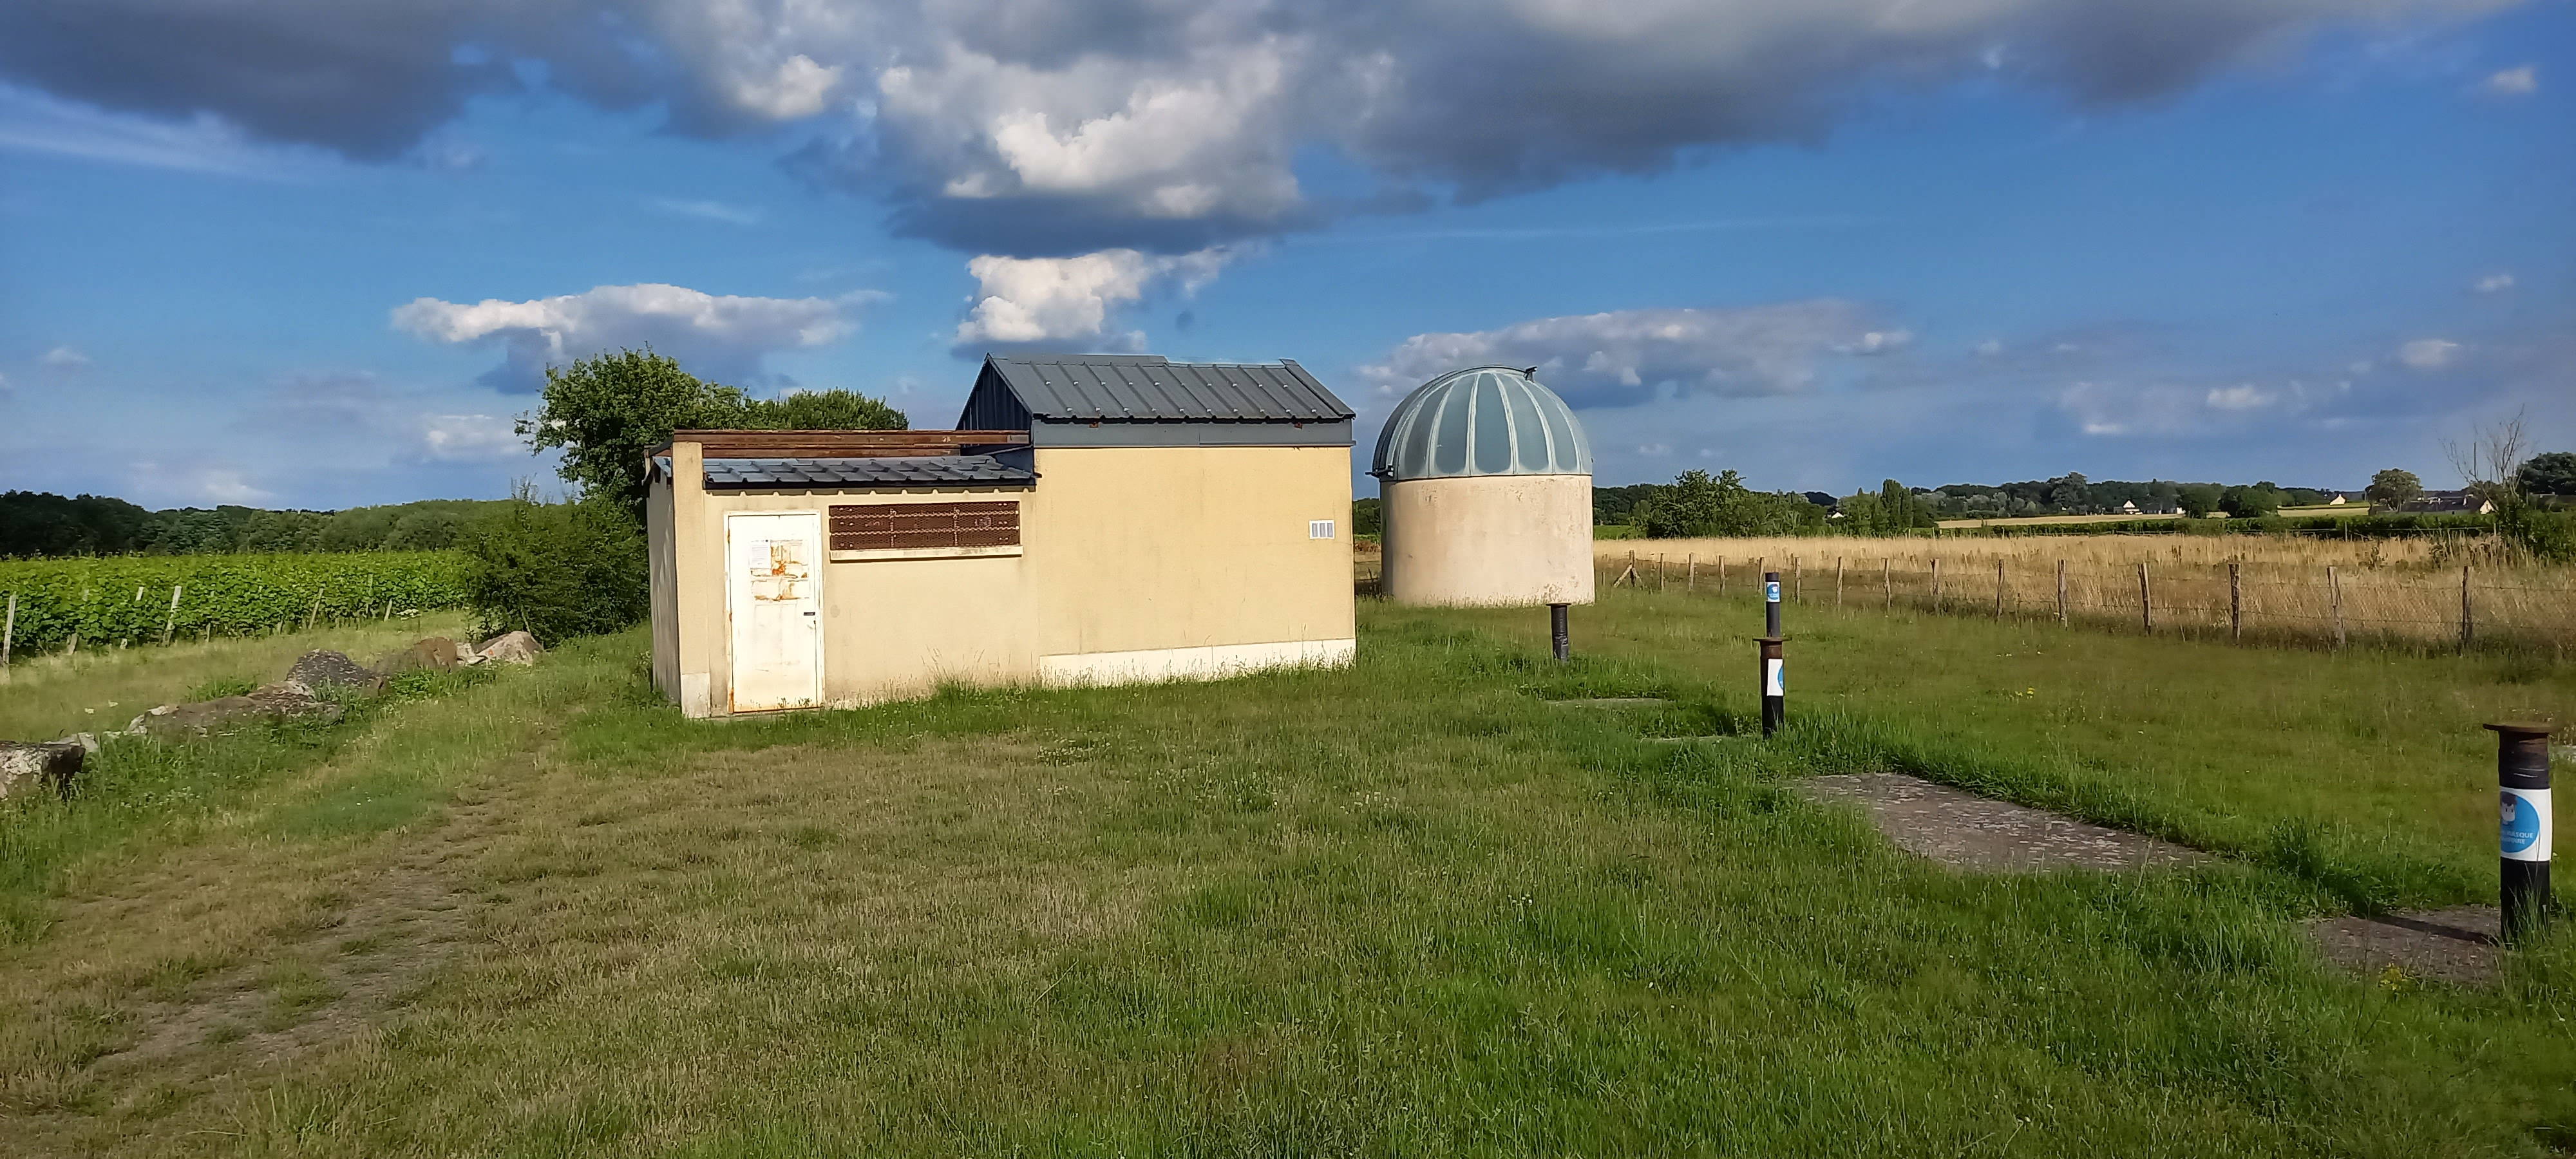 JOURNÉES DU PATRIMOINE – OBSERVATOIRE ASTRONOMIQUE DE ST-SATURNIN-SUR-LOIRE©